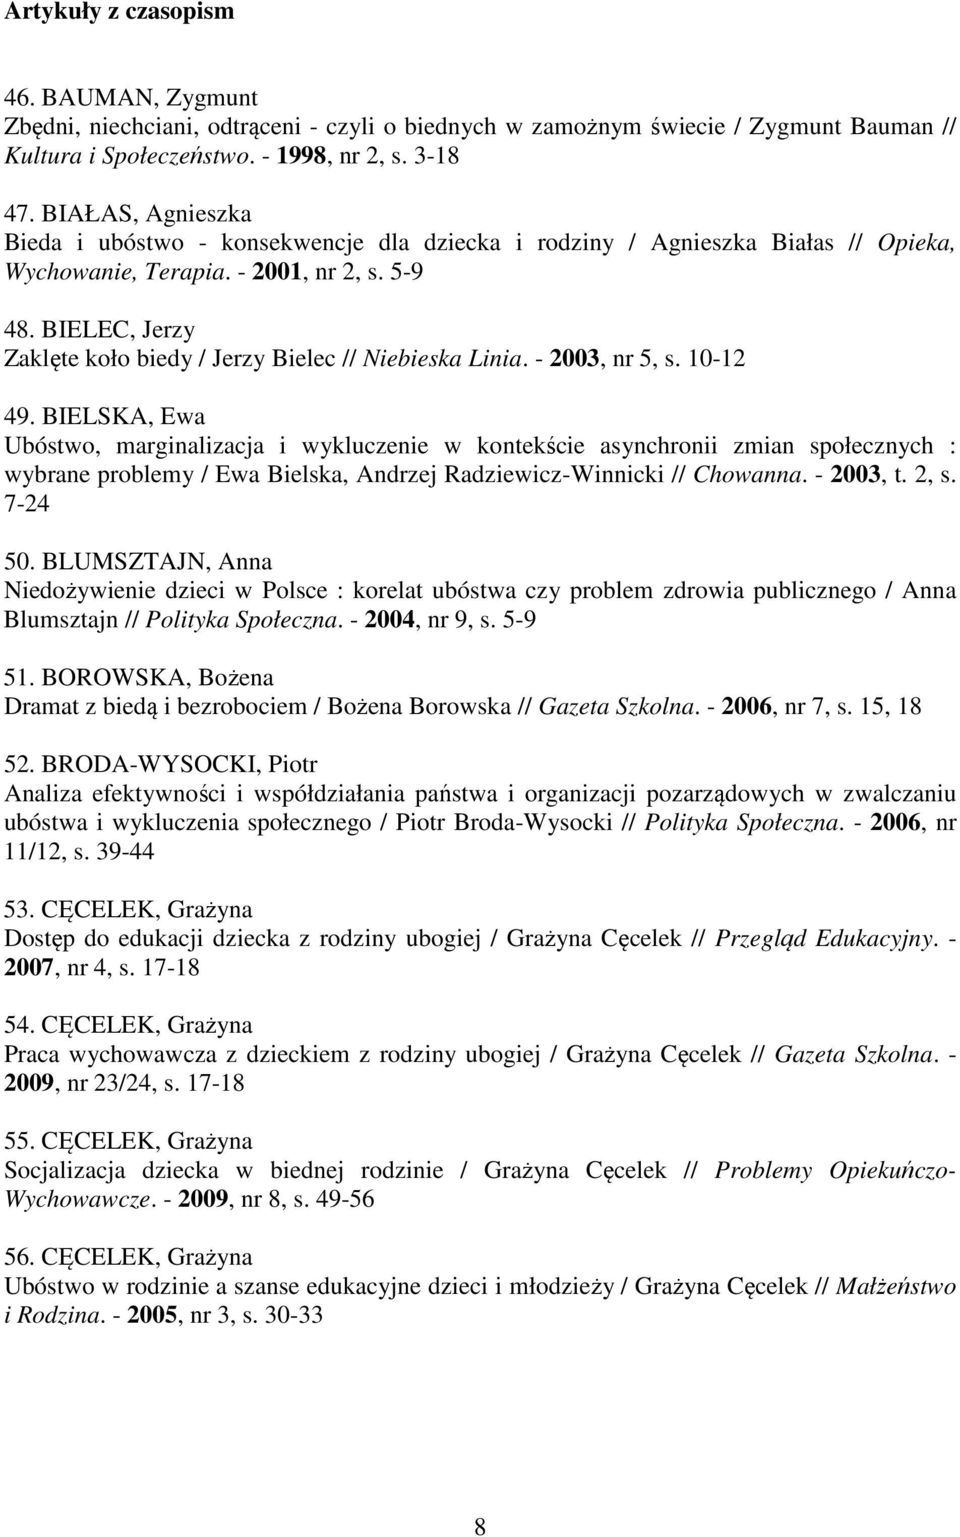 BIELEC, Jerzy Zaklęte koło biedy / Jerzy Bielec // Niebieska Linia. - 2003, nr 5, s. 10-12 49.